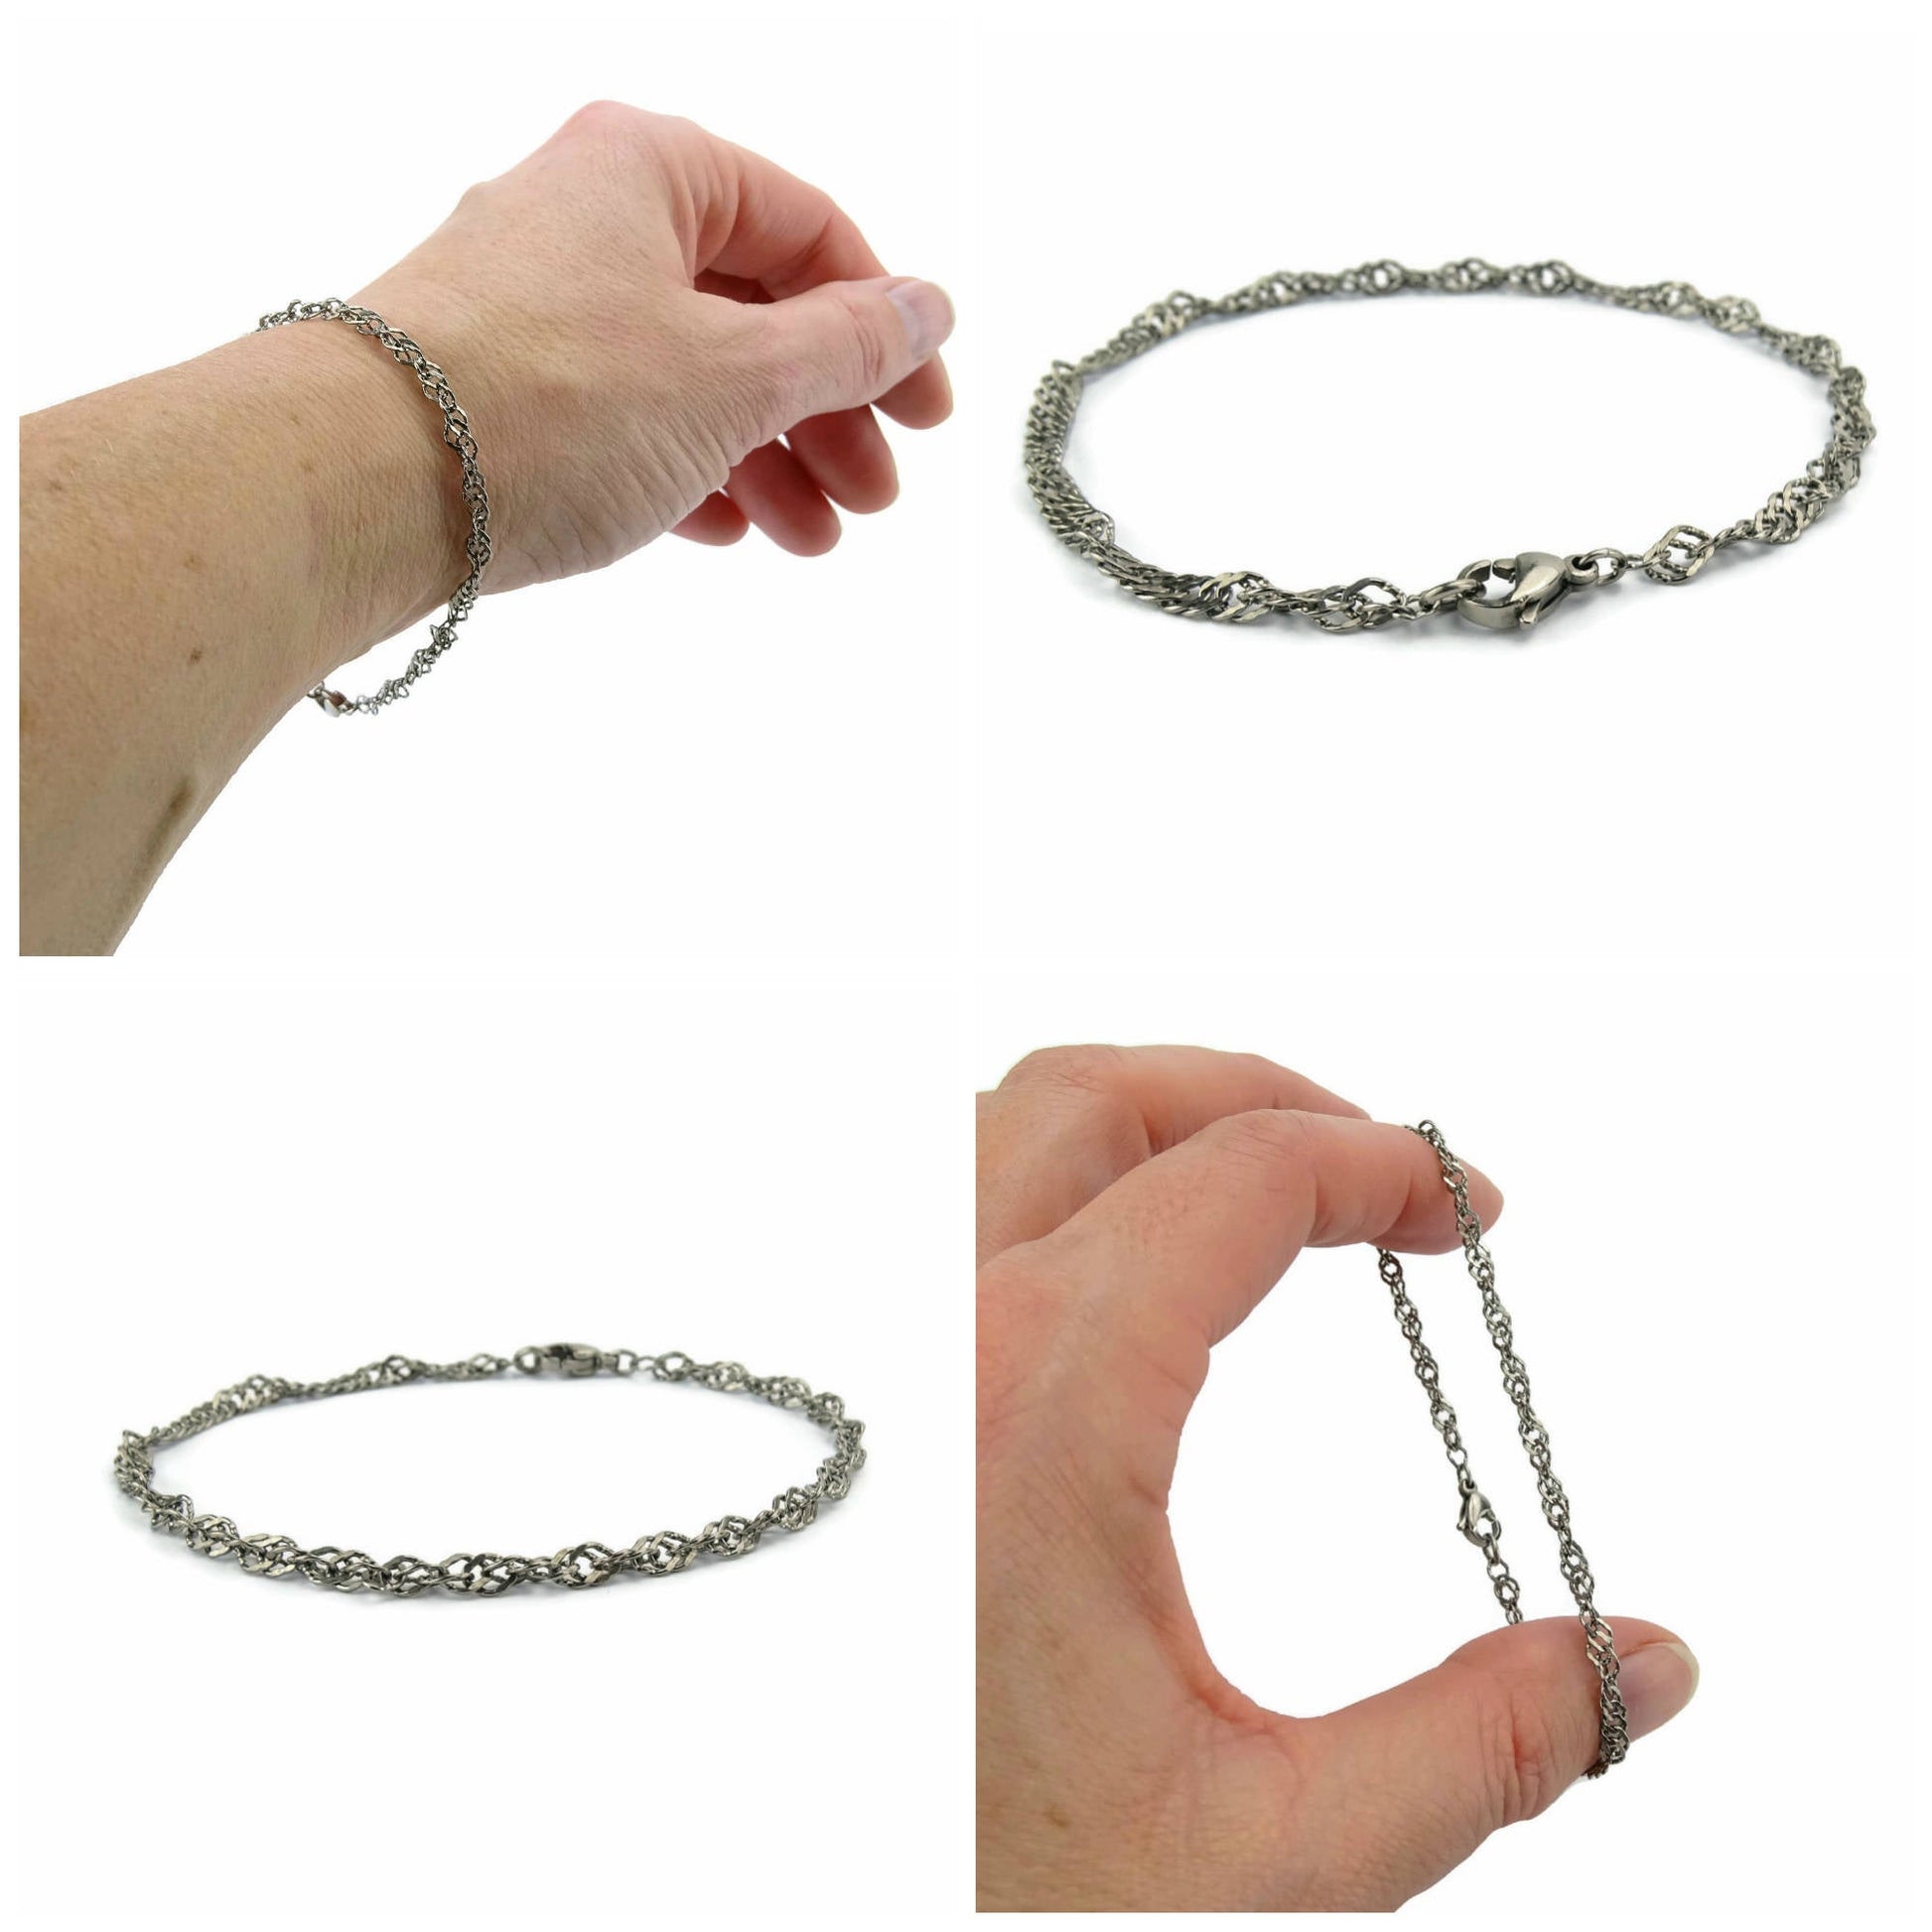 Pure S999 Sterling Silver Chain Men Women Gift Singapore Twist Link Bracelet  | eBay